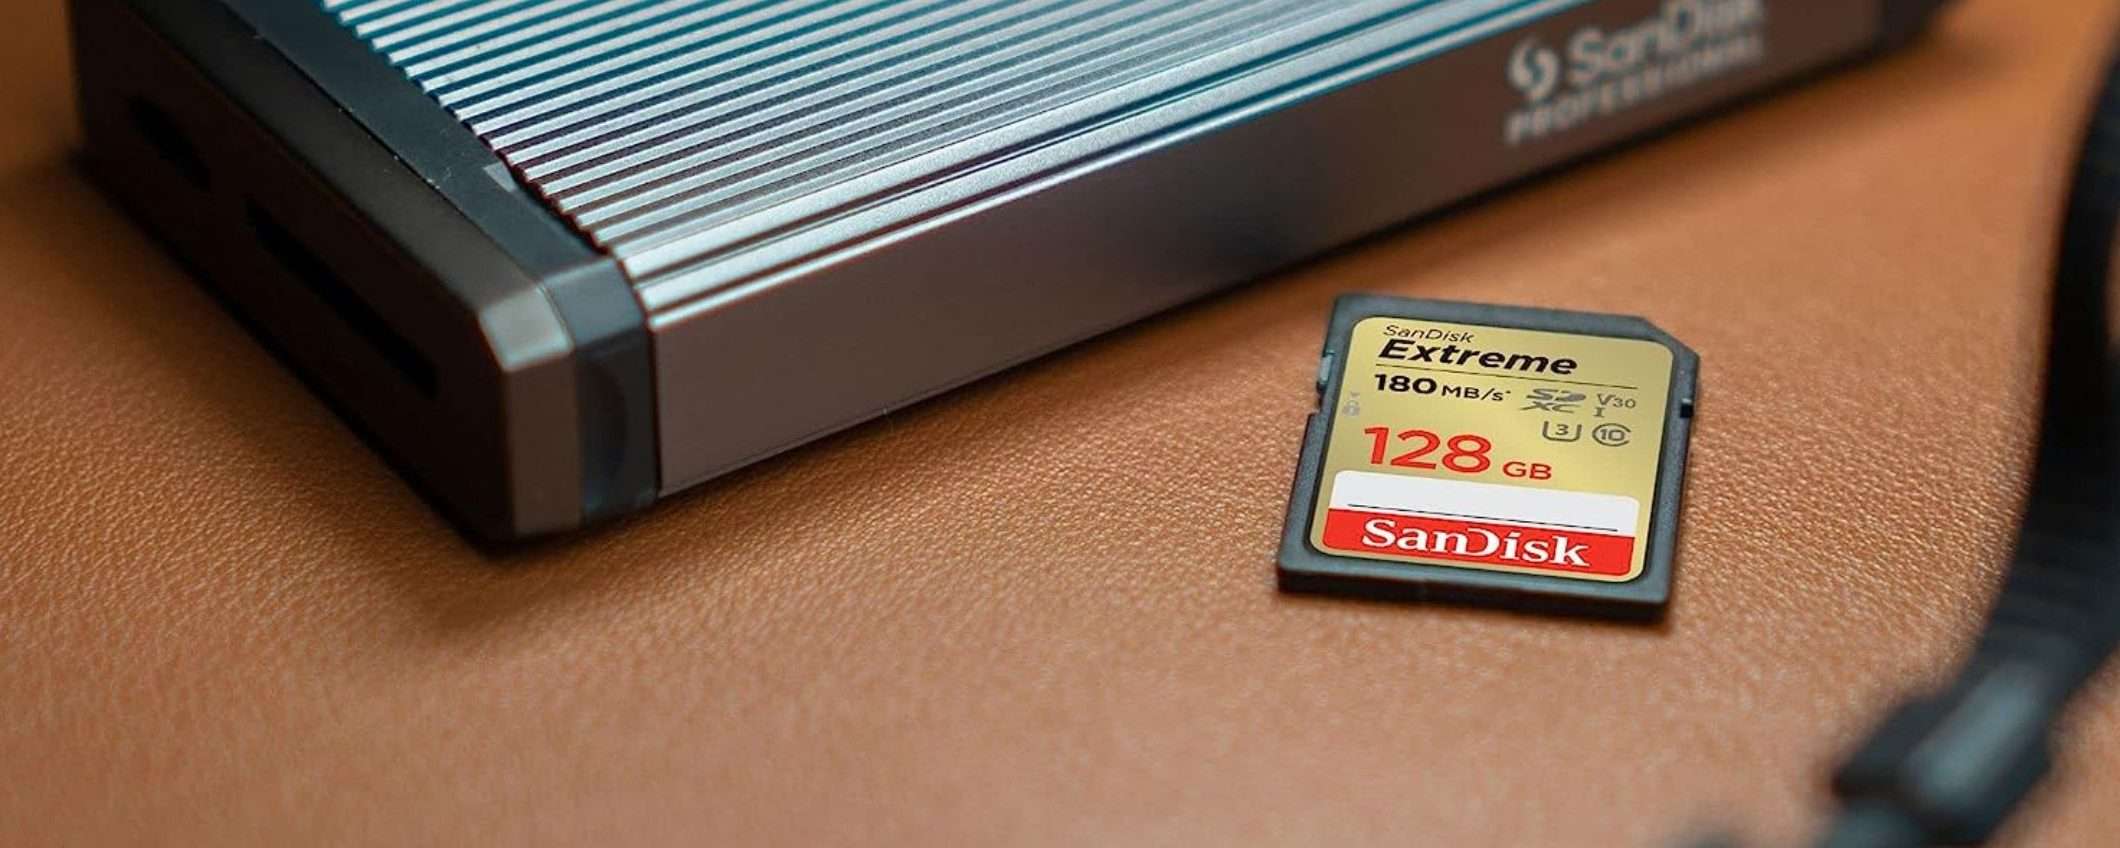 MicroSD SanDisk Extreme 128GB: resiste a TUTTO, in offerta su Amazon